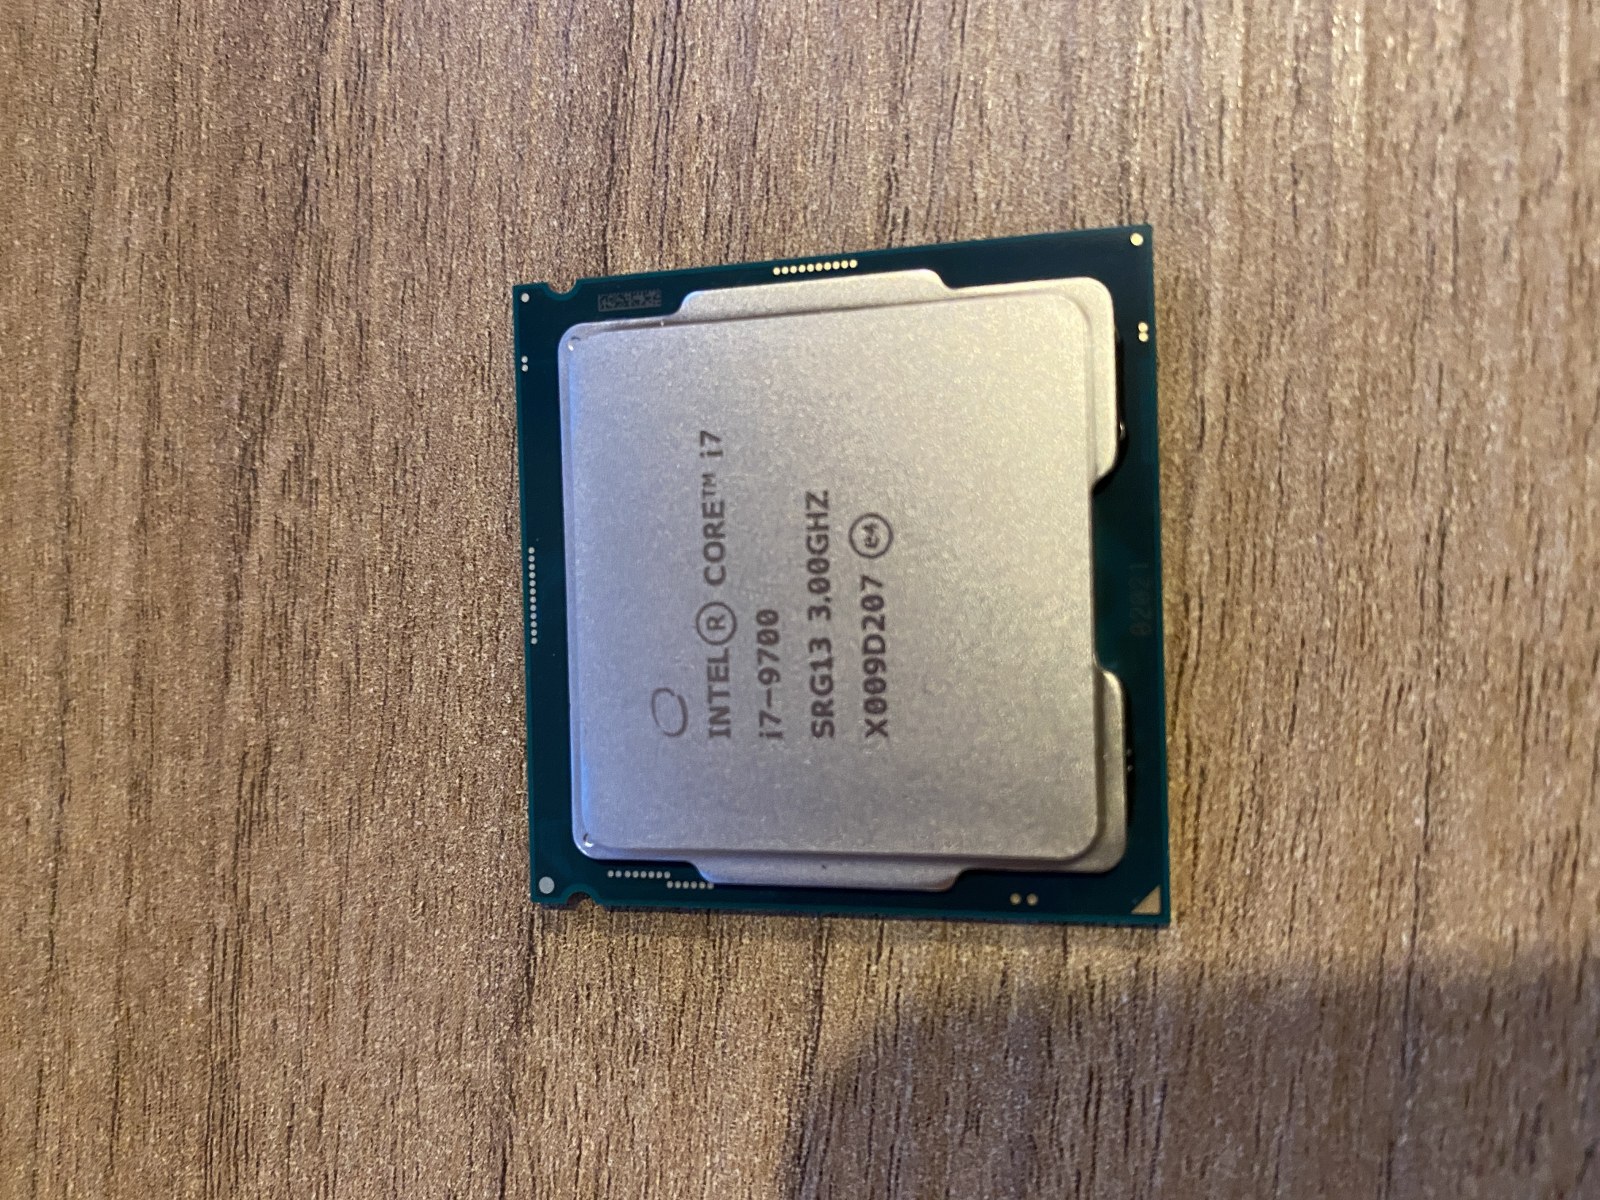 LGA 1151 V.2 CPU I7-9700 3.0 GHz. Cores: 8 Threads: 8